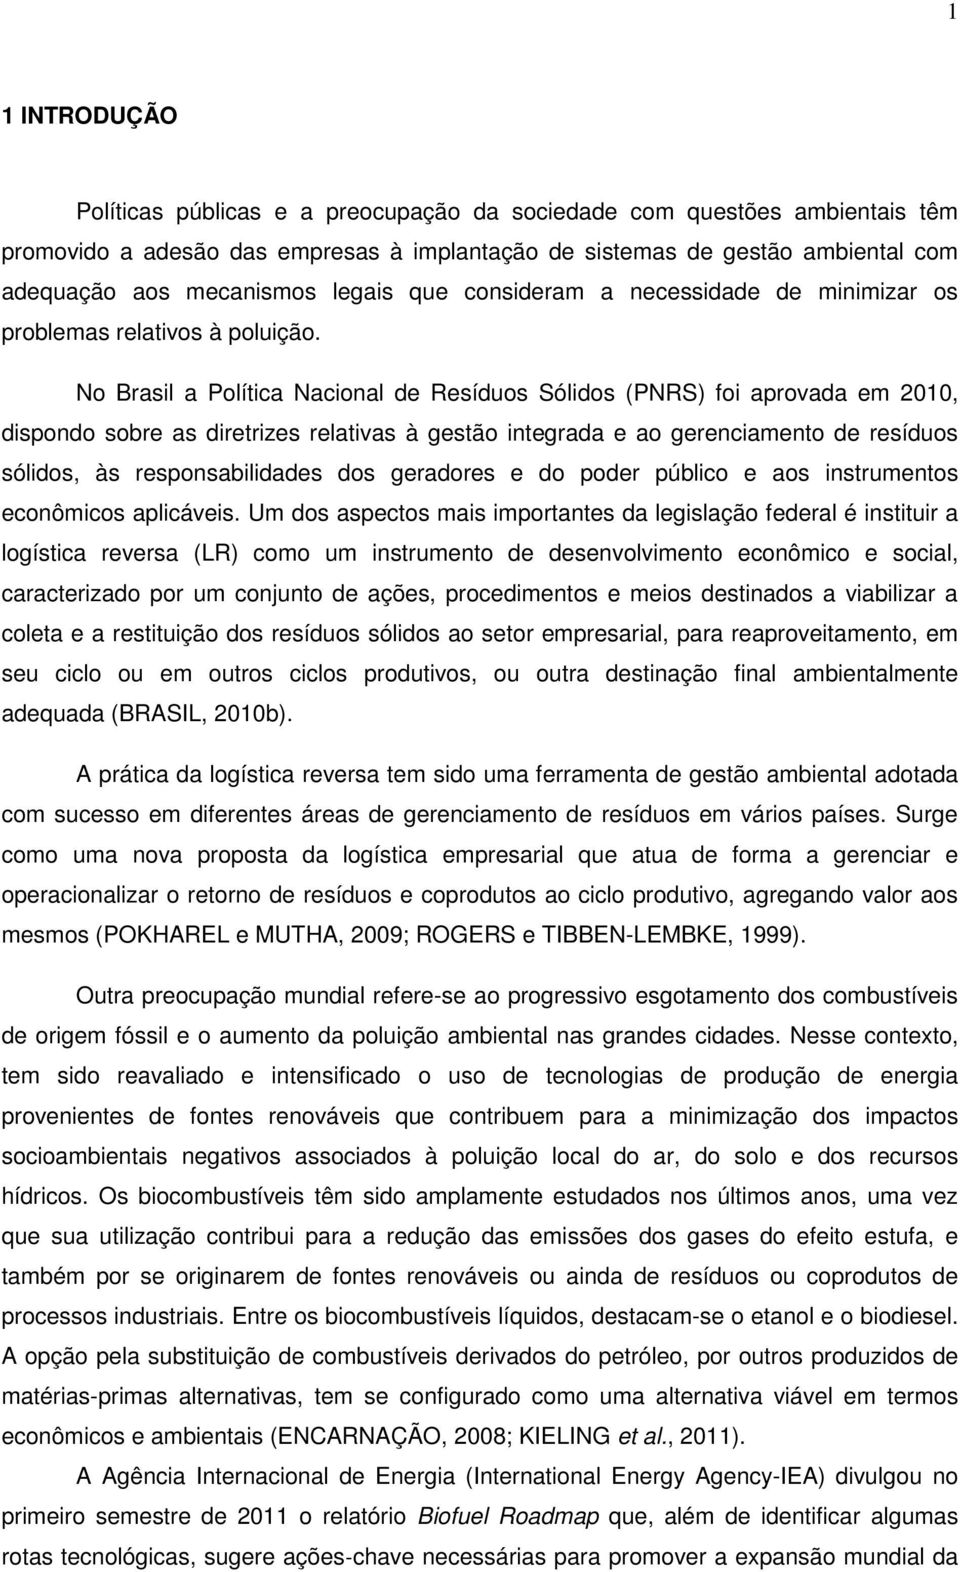 No Brasil a Política Nacional de Resíduos Sólidos (PNRS) foi aprovada em 2010, dispondo sobre as diretrizes relativas à gestão integrada e ao gerenciamento de resíduos sólidos, às responsabilidades